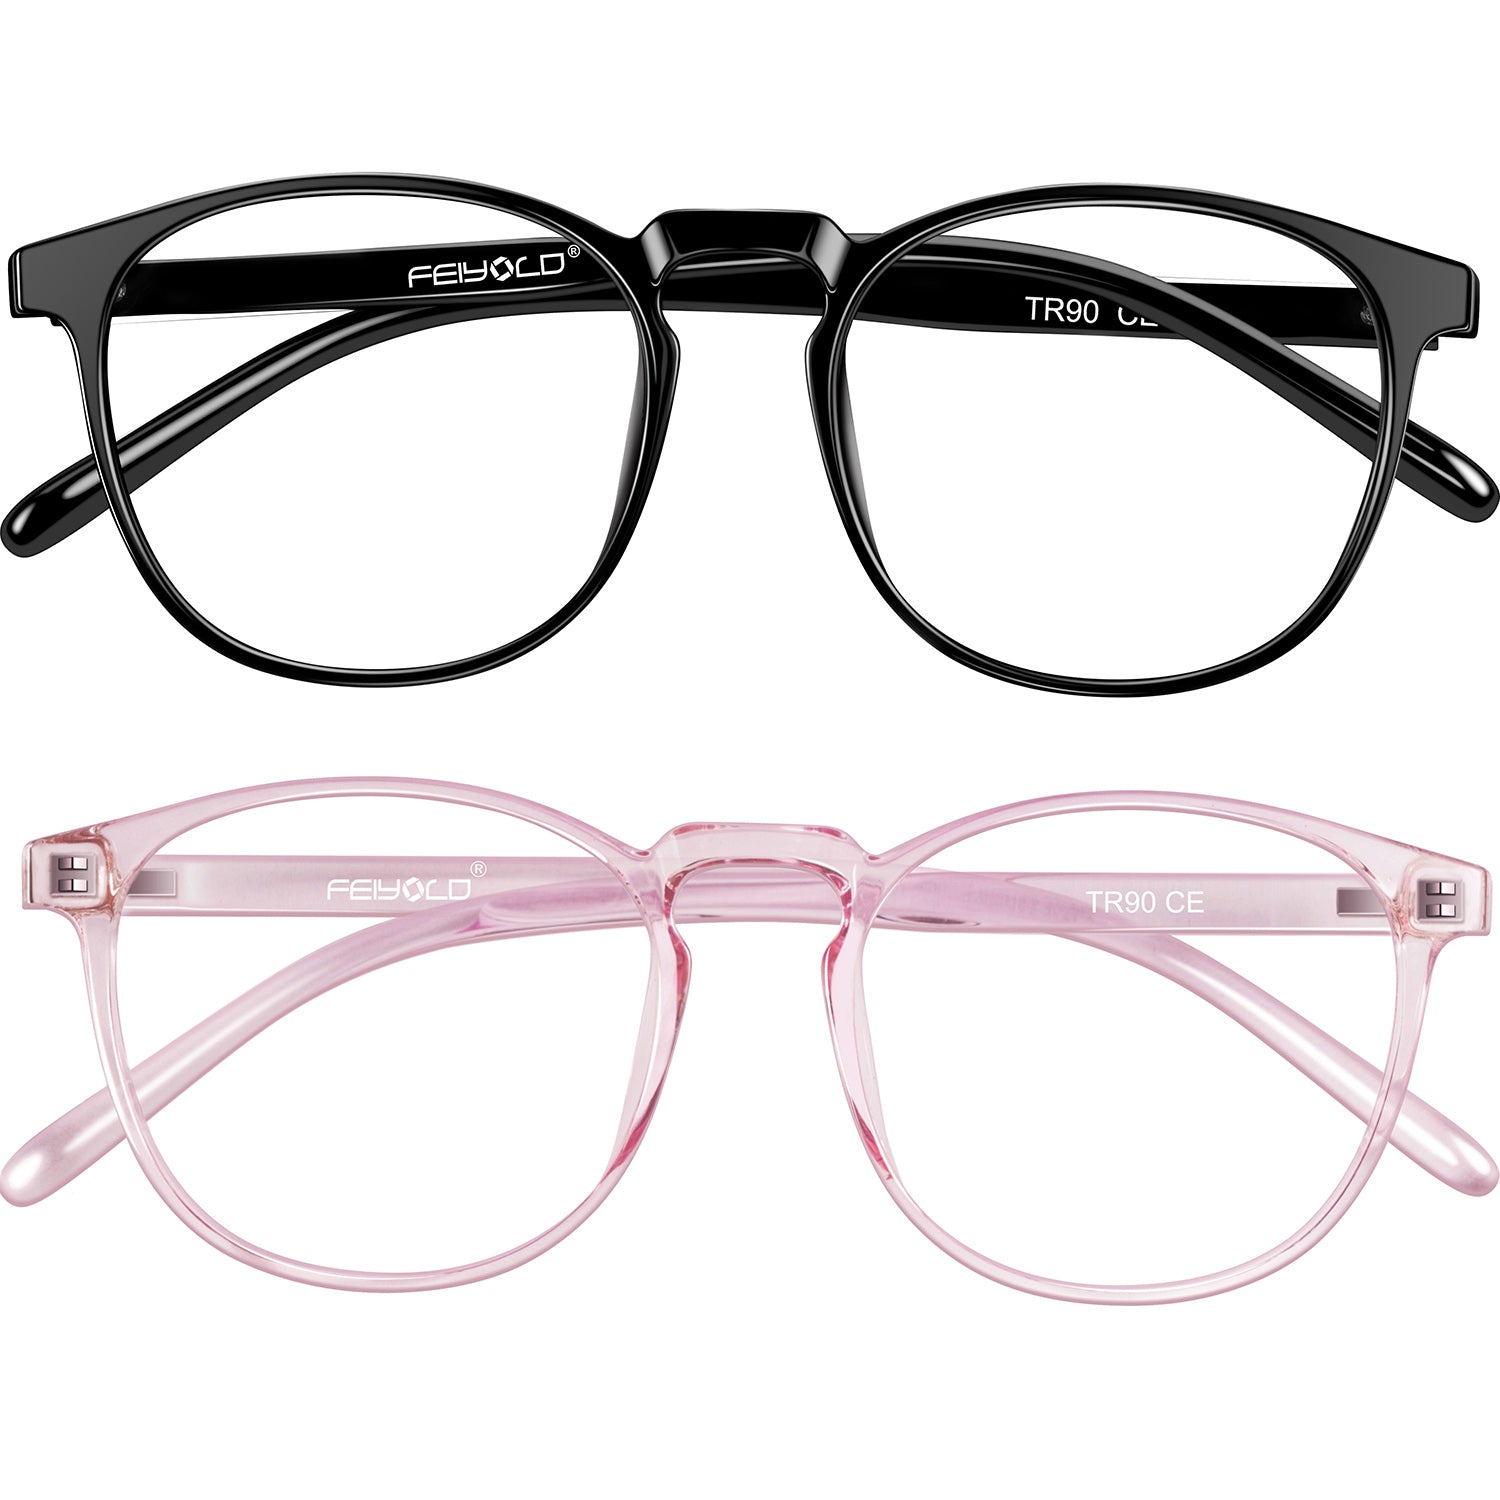 Blue Light Blocking Glasses Women/Men for Computer Use, Lightweight Anti Eyestrain Gaming Glasses Black+pink(2Pack)